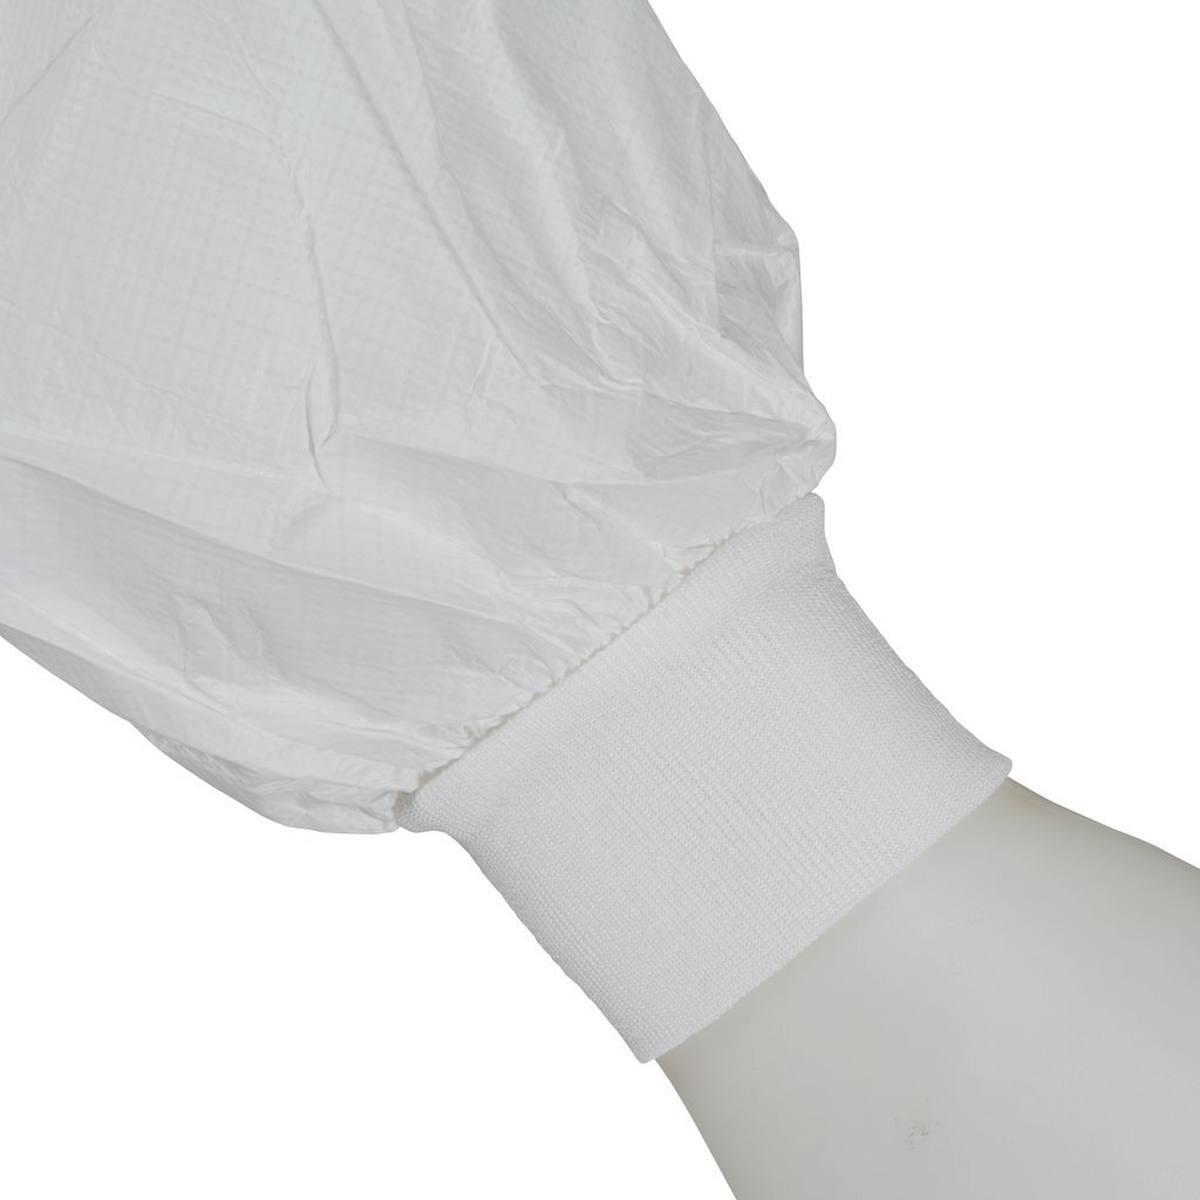 3M 4440 Manteau, blanc, taille 3XL, particulièrement respirant, très léger, avec fermeture éclair, poignets tricotés